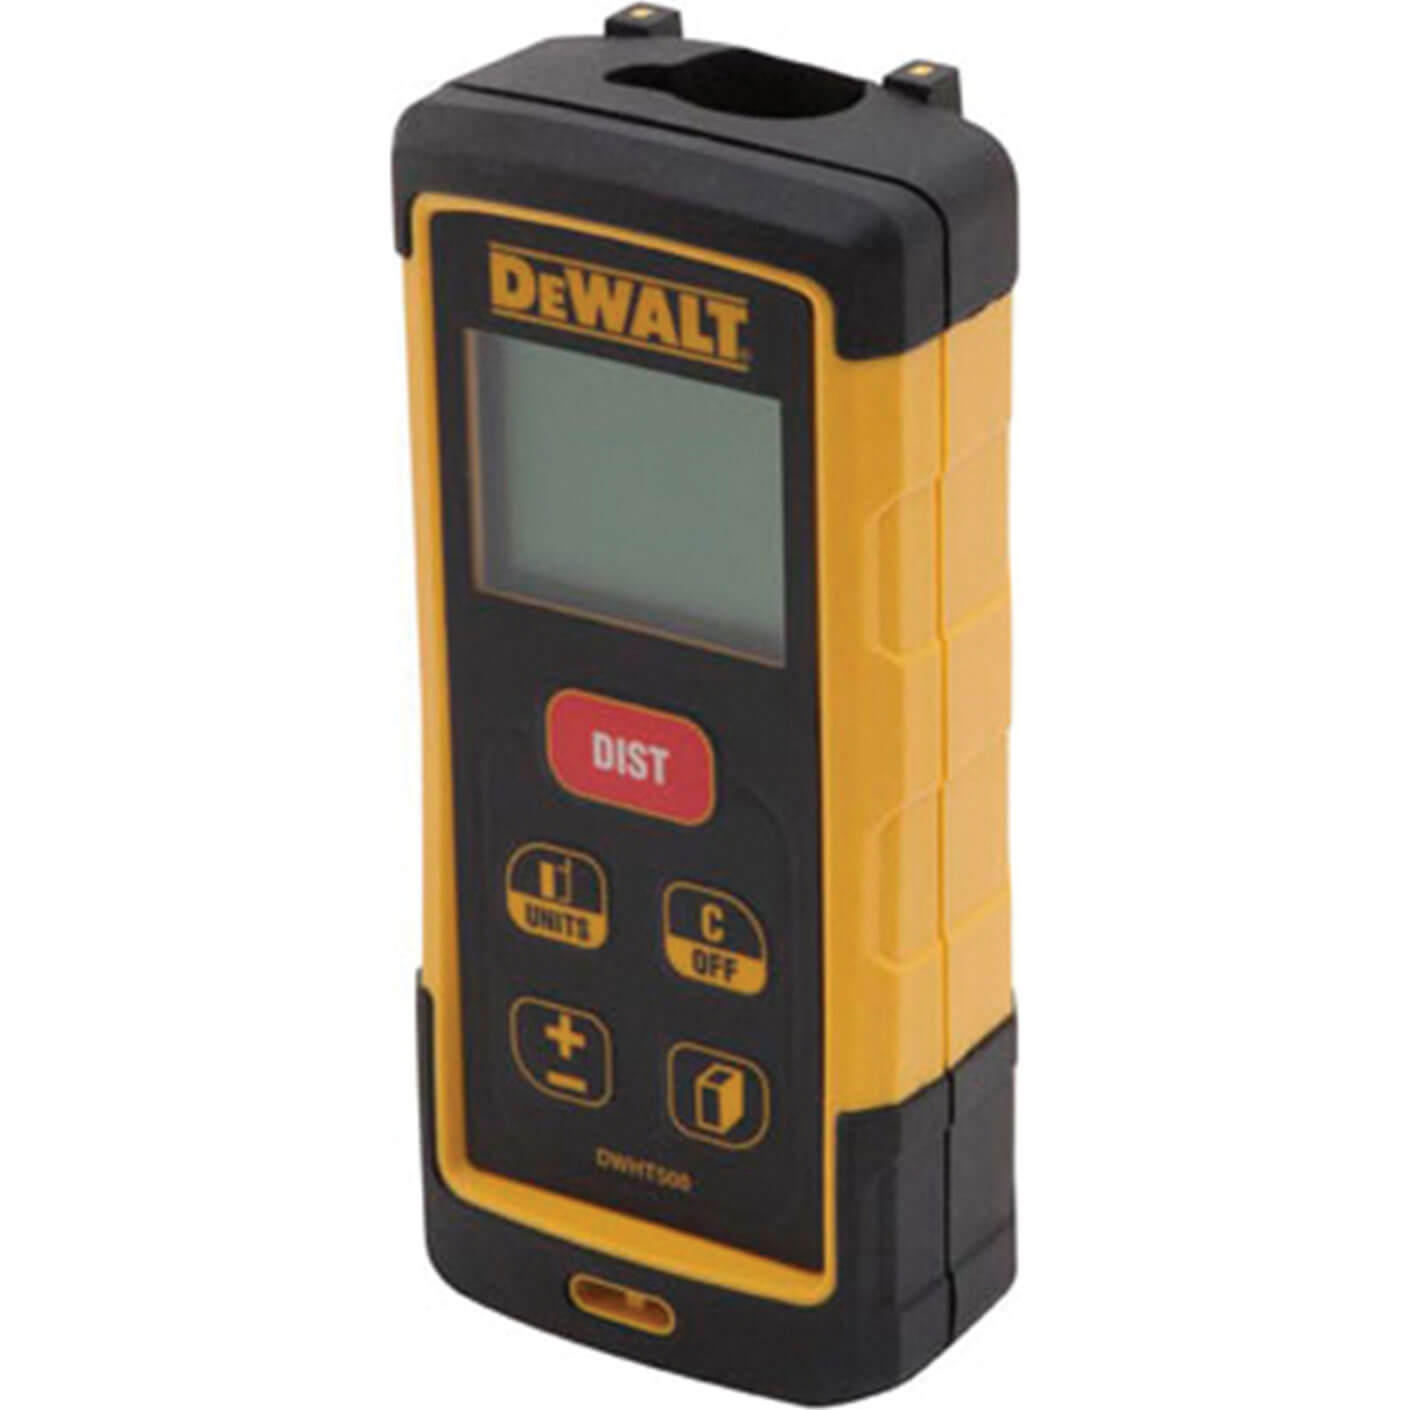 DeWalt DW03050 Laser Distance Measure 50 Metre Range Metric & Imperial Measuring